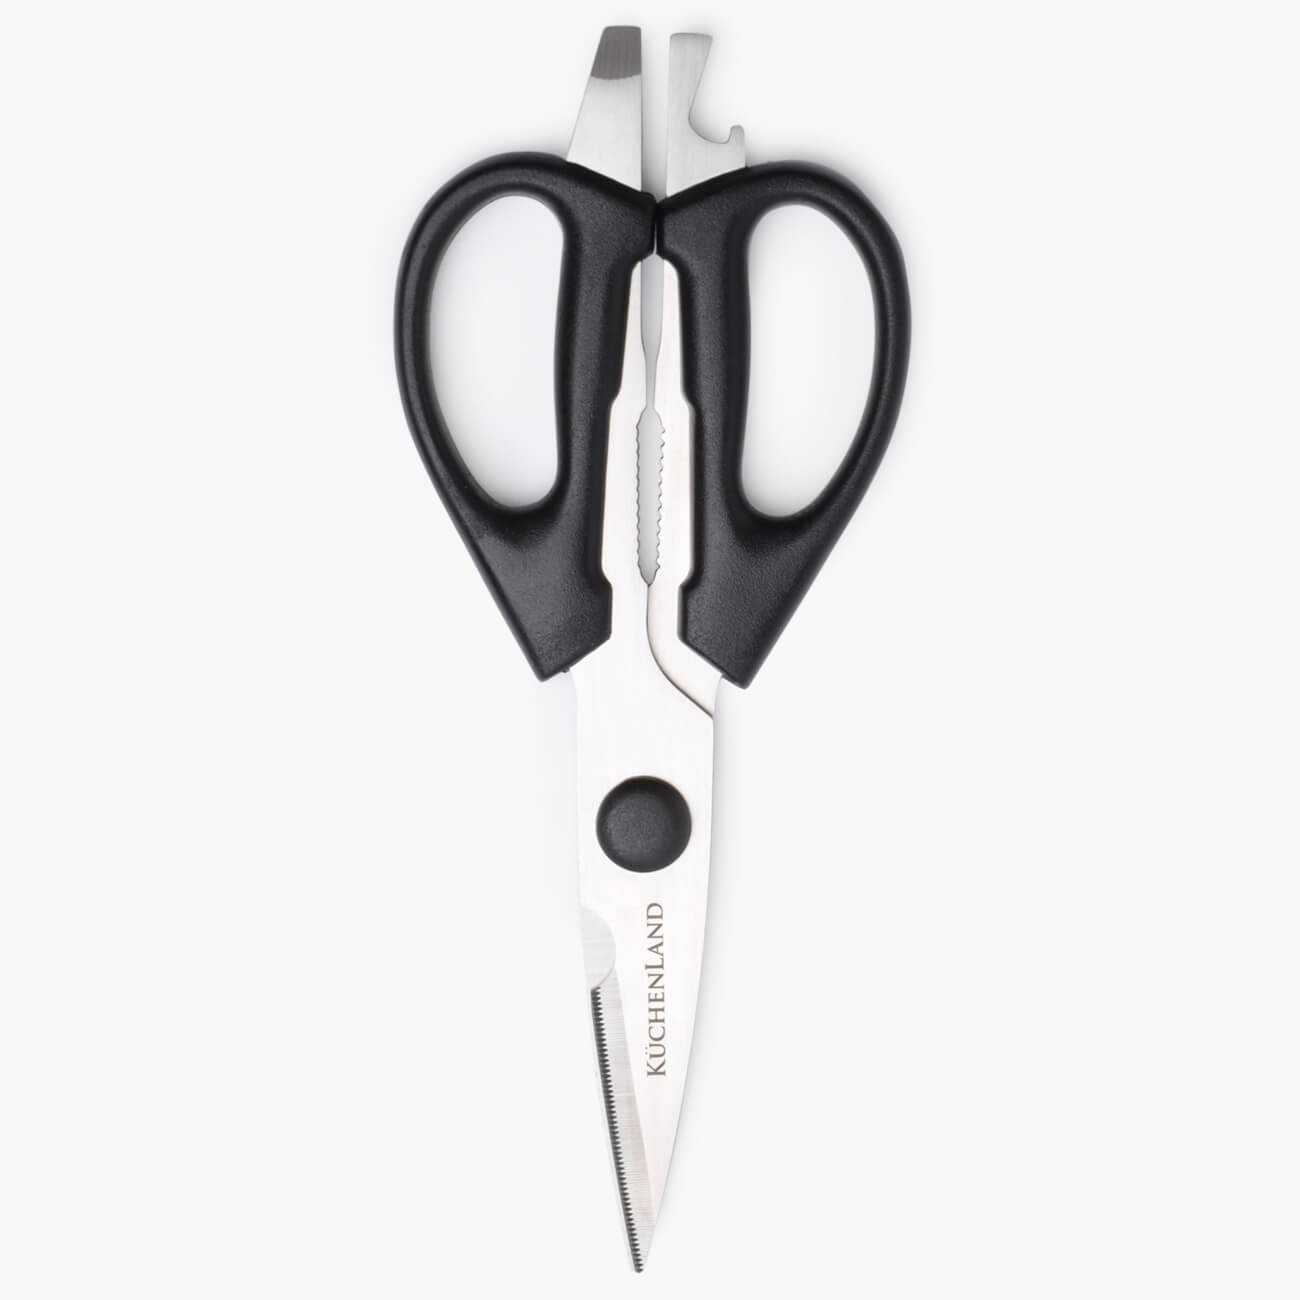 Ножницы кухонные, 21 см, с открывалкой и орехоколом, сталь/пластик, черные, Black style универсальные ножницы mr logo